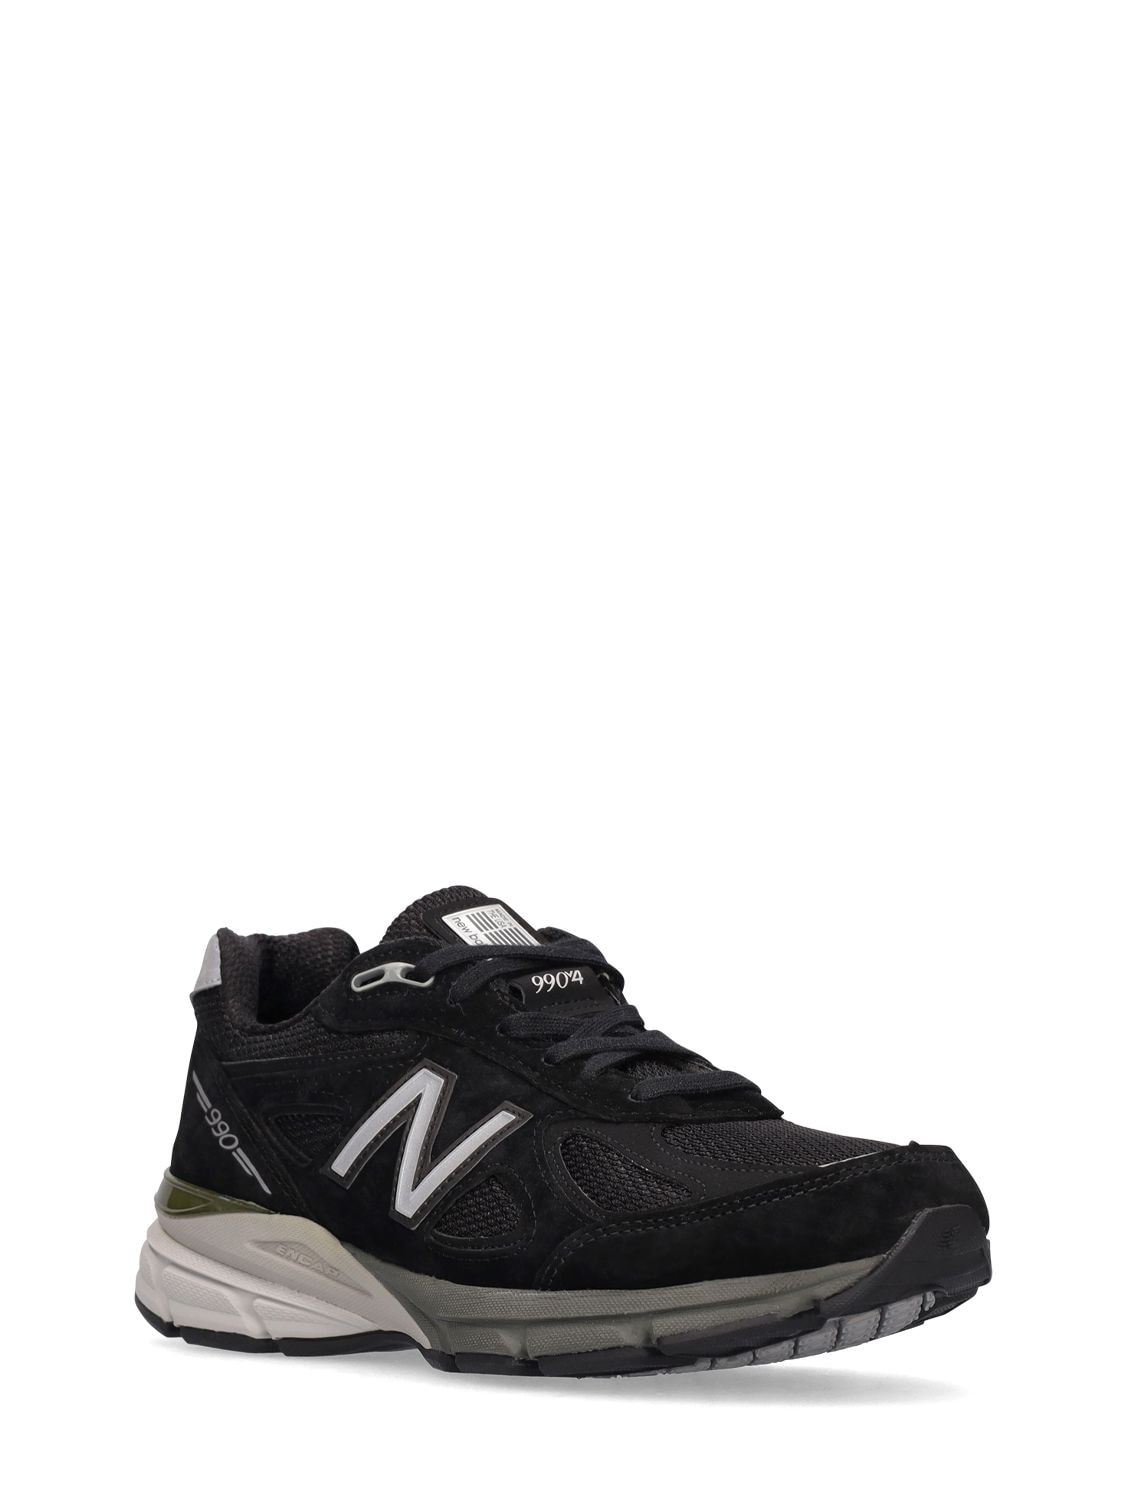 New Balance Black In Us 990 V5 Sneakers In Grey | ModeSens